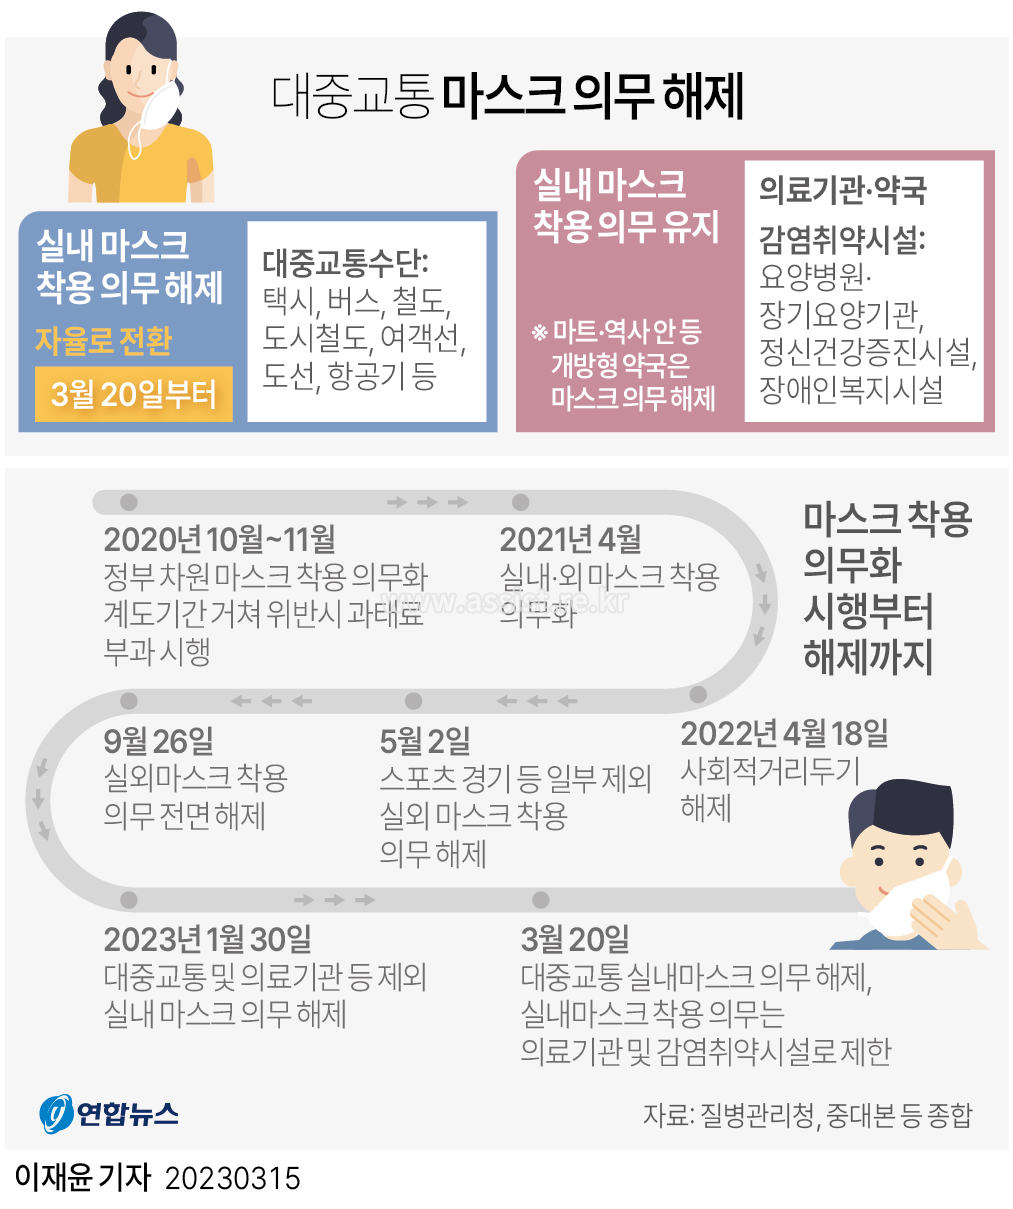 韩国生活|3月20日起在韩国乘坐公共交通“口罩义务”解除